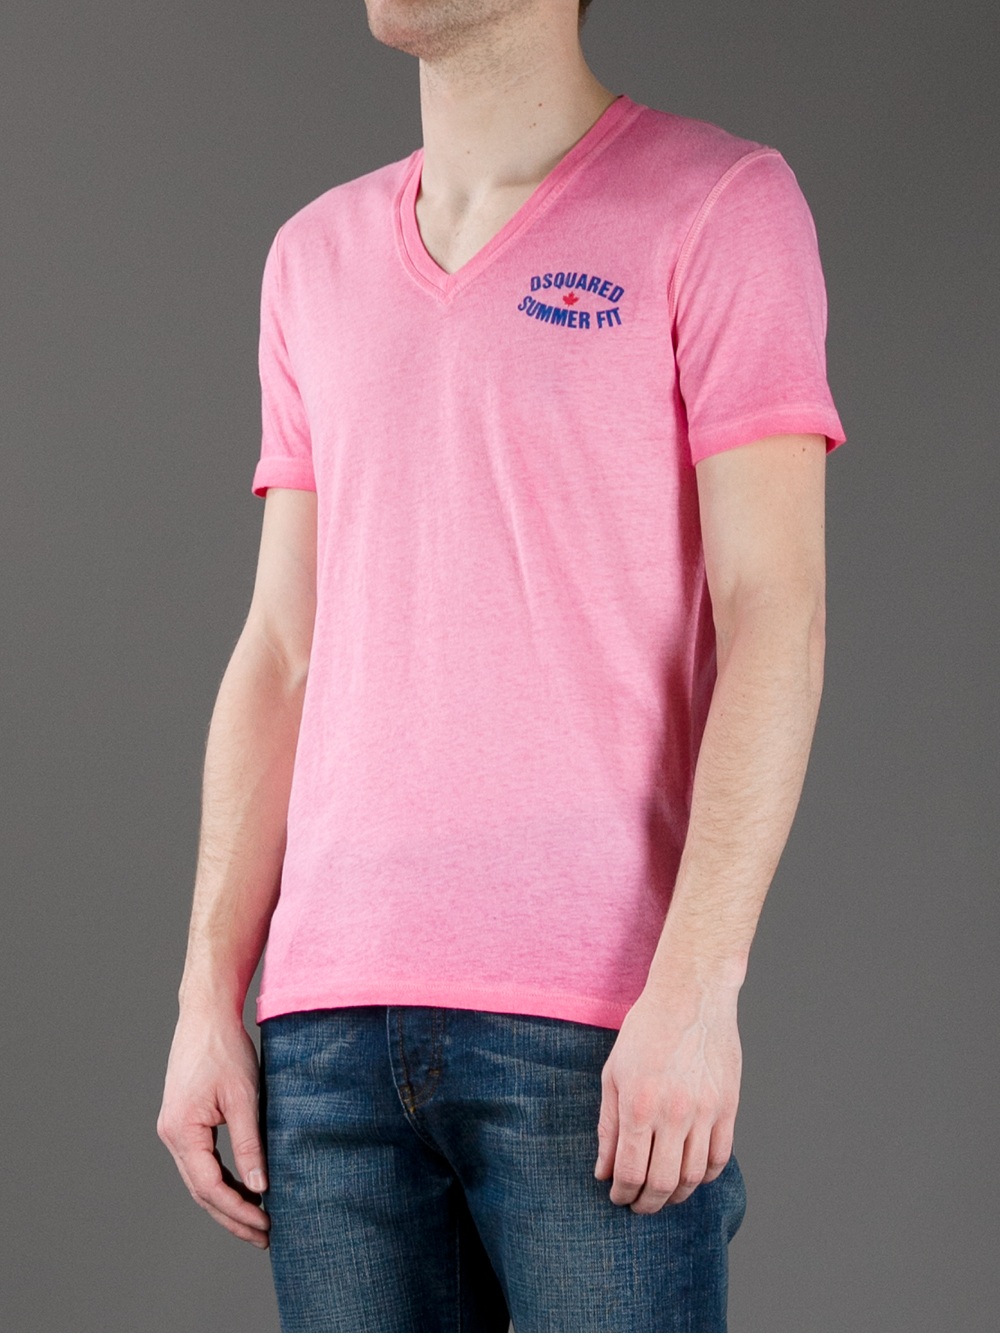 DSquared² V-Neck T-shirt in Pink for Men - Lyst